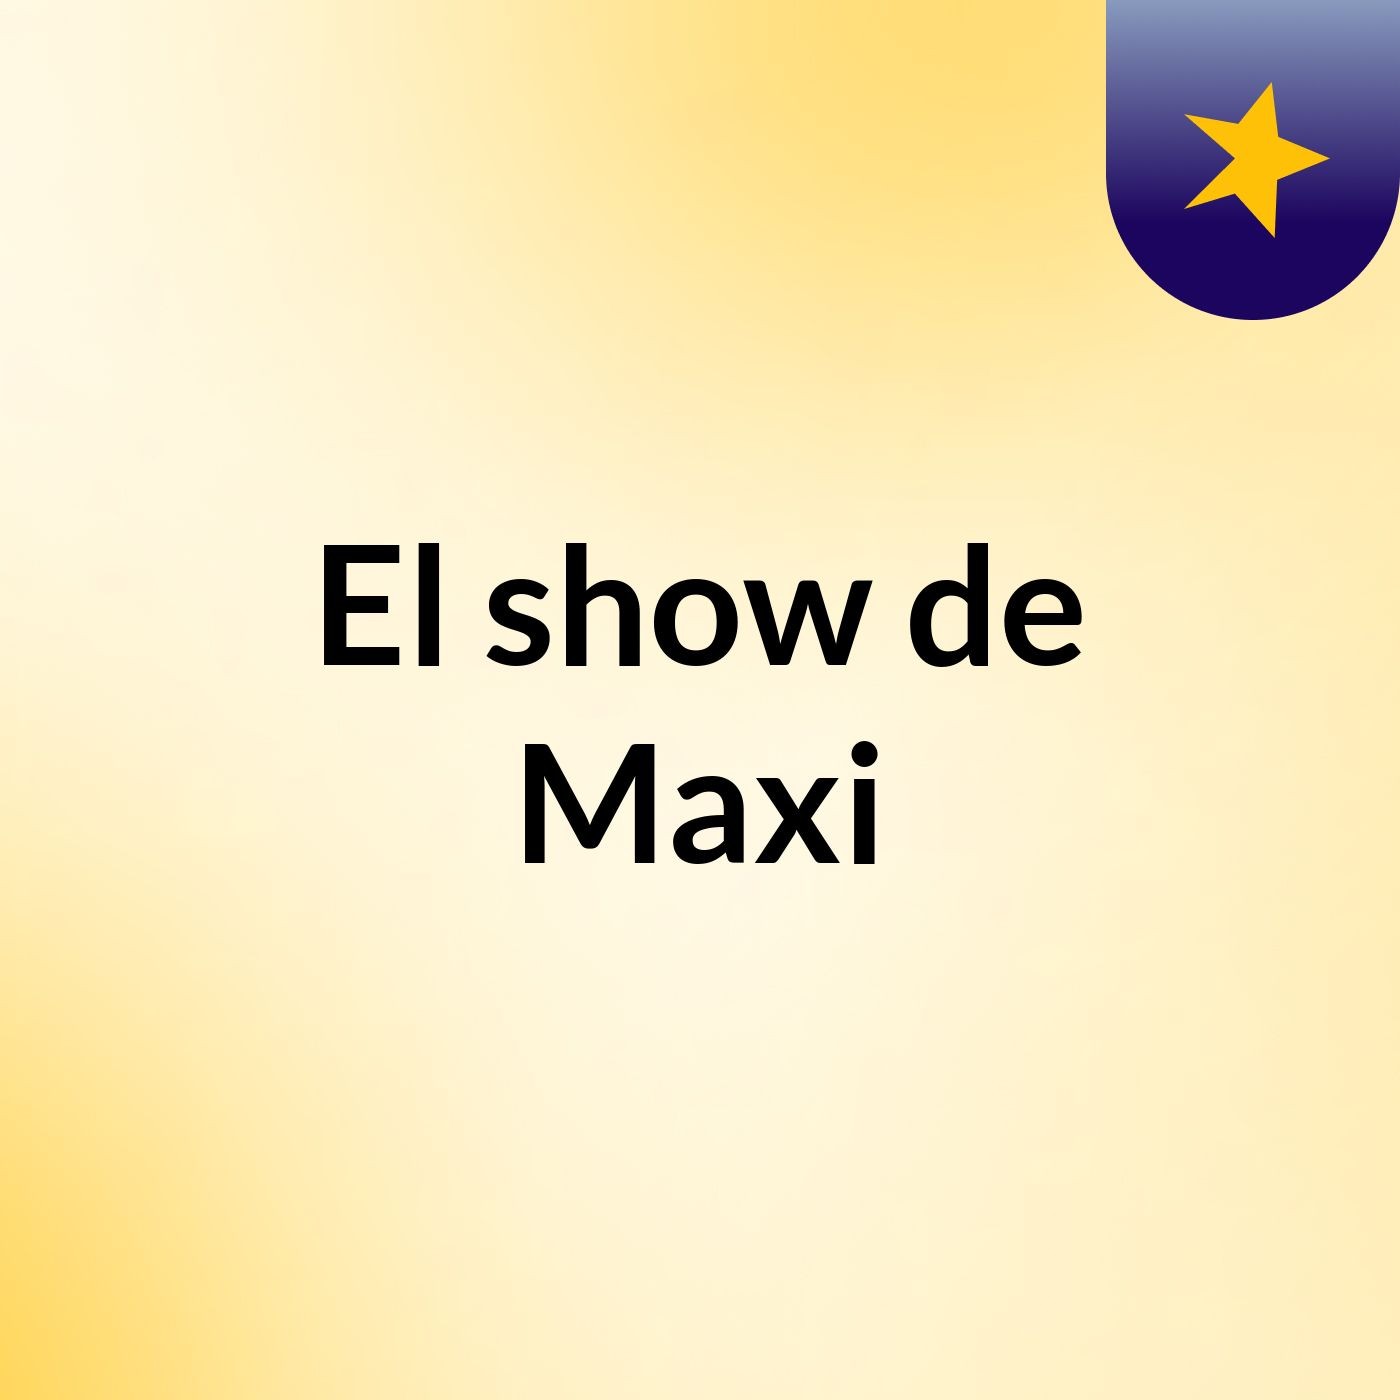 El show de Maxi